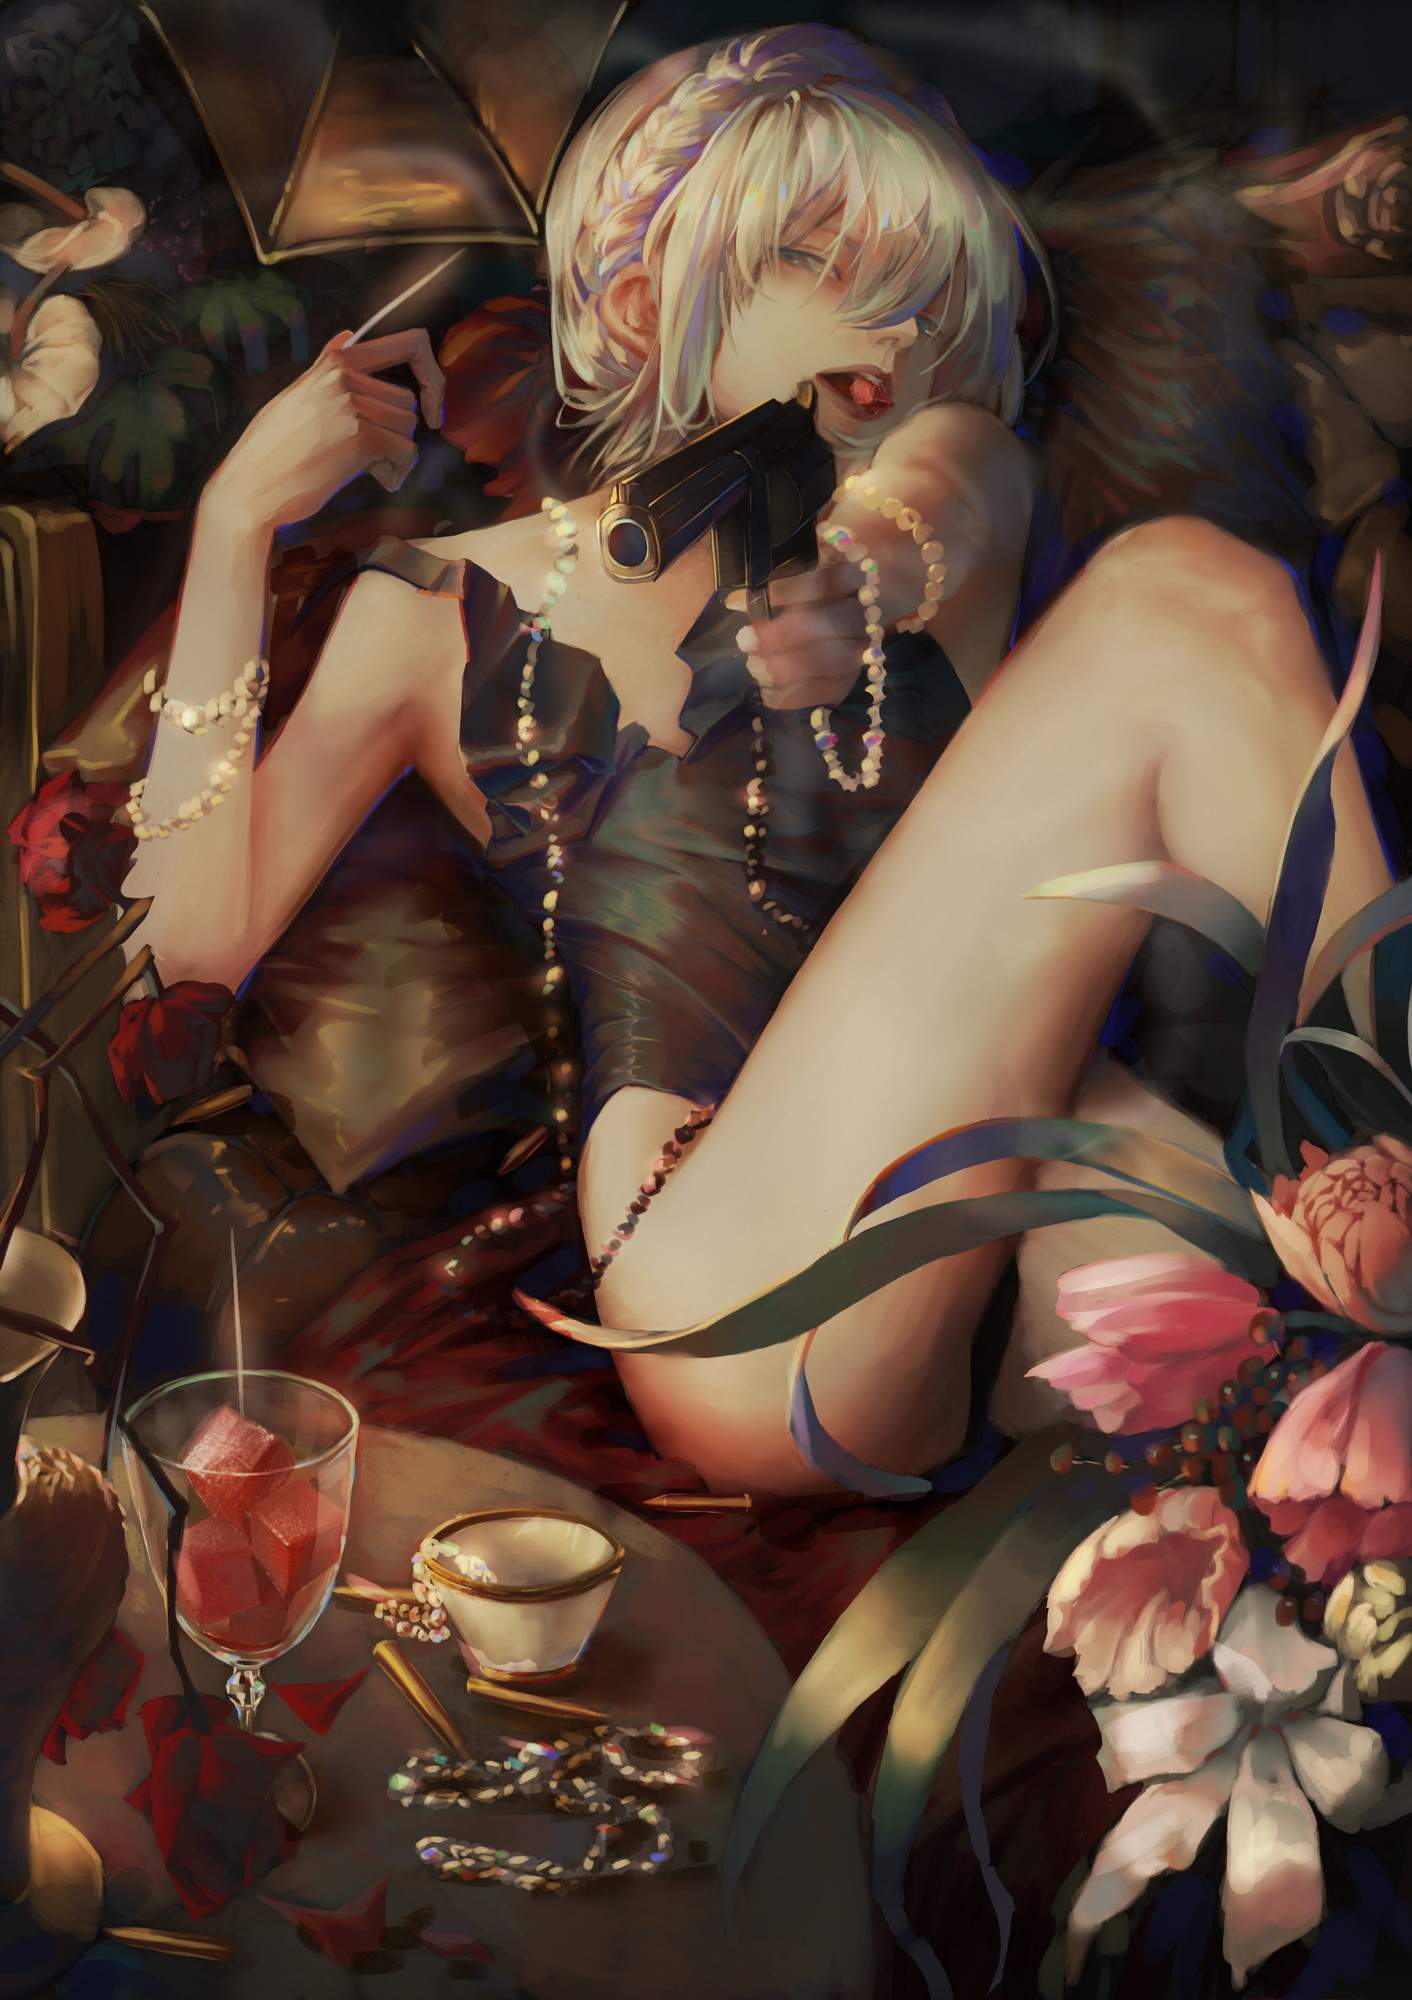 【Fate Grand Order】アナスタシア・ニコラエヴナ・ロマノヴァのイキ顔になってるドエロい抜ける画像